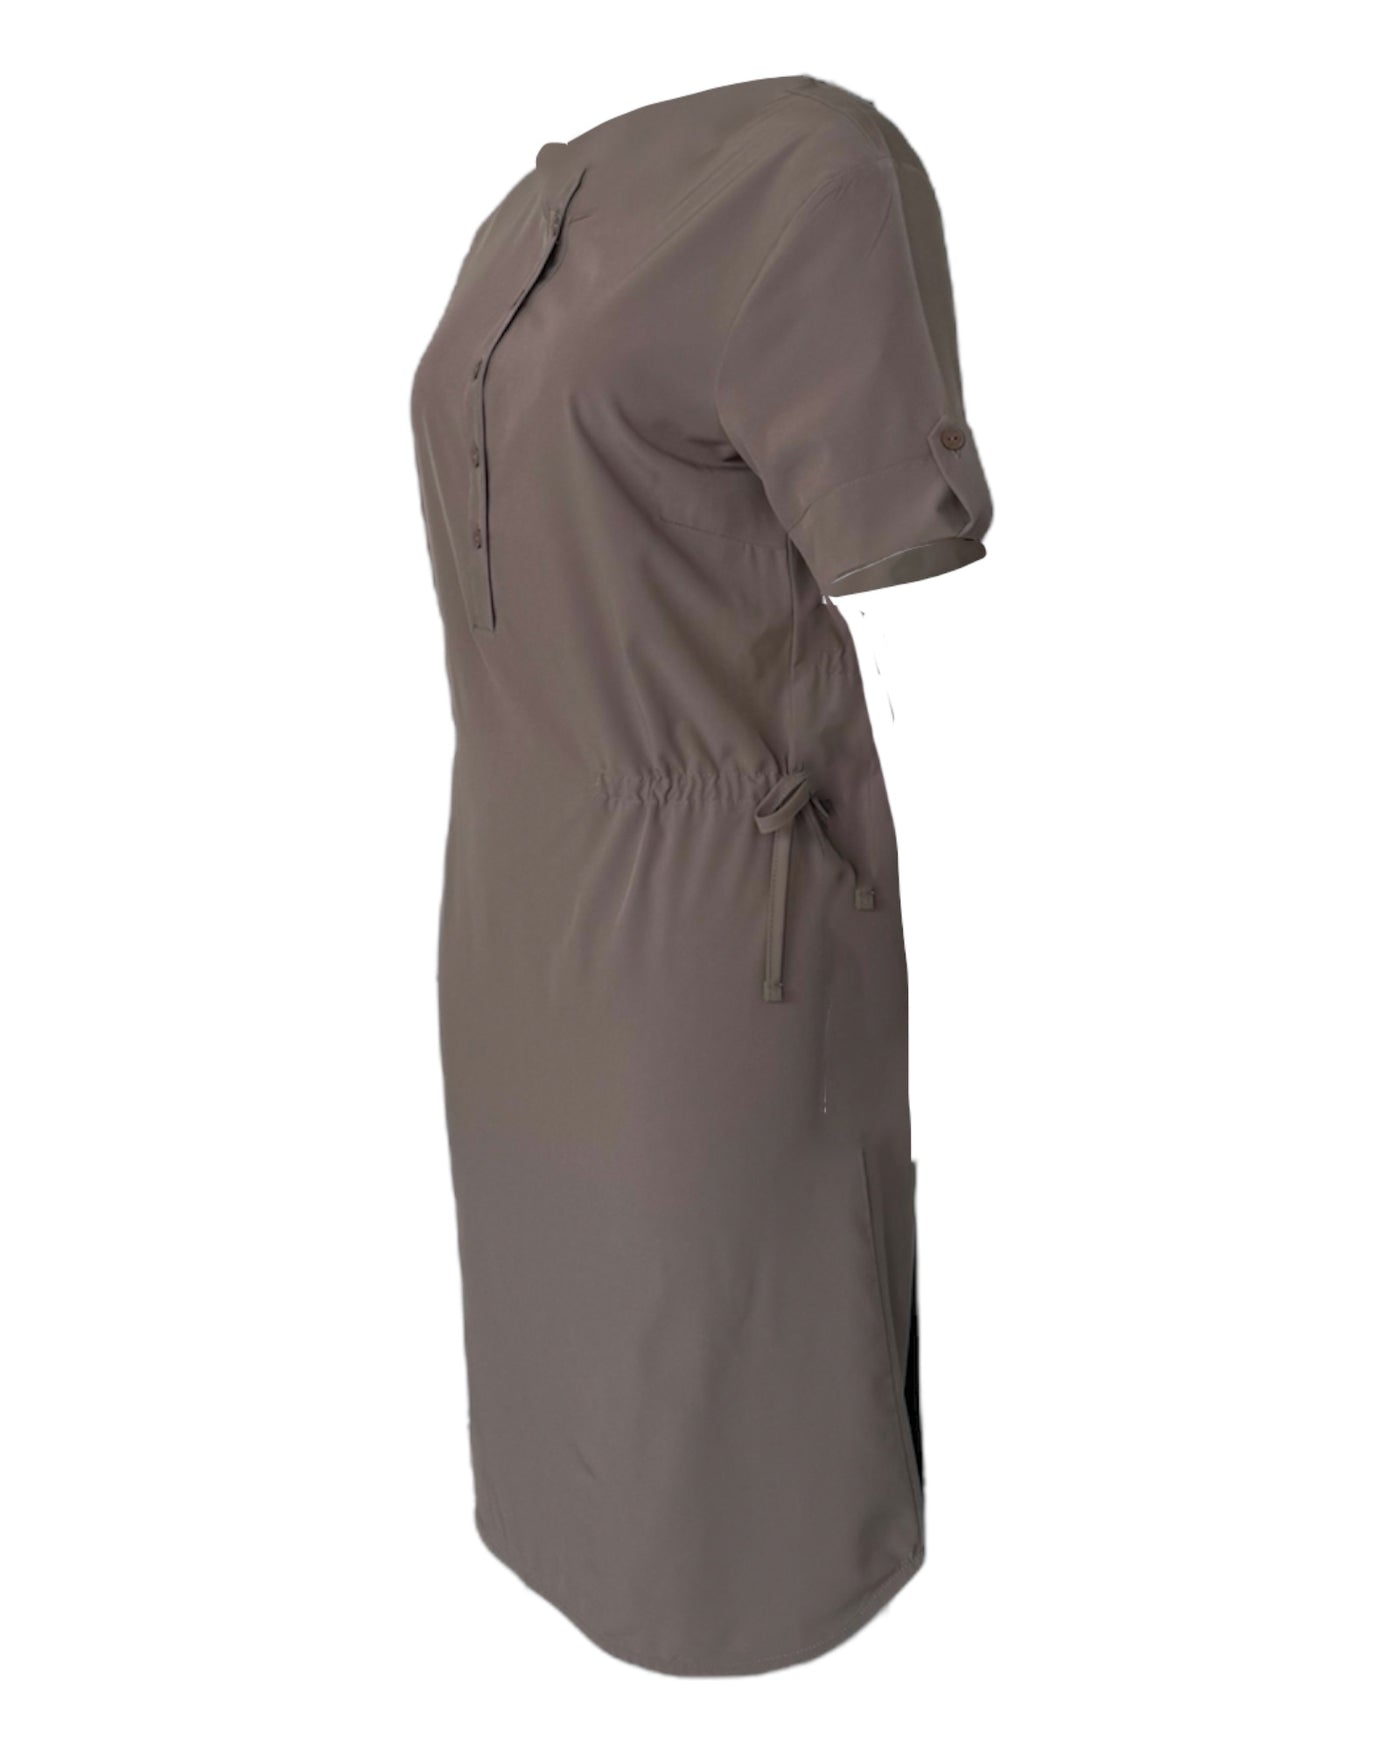 Robe taupe pour femme avec des manches courtes, extensible, légère et confortable avec cordons d'ajustements. Idéale pour le voyage